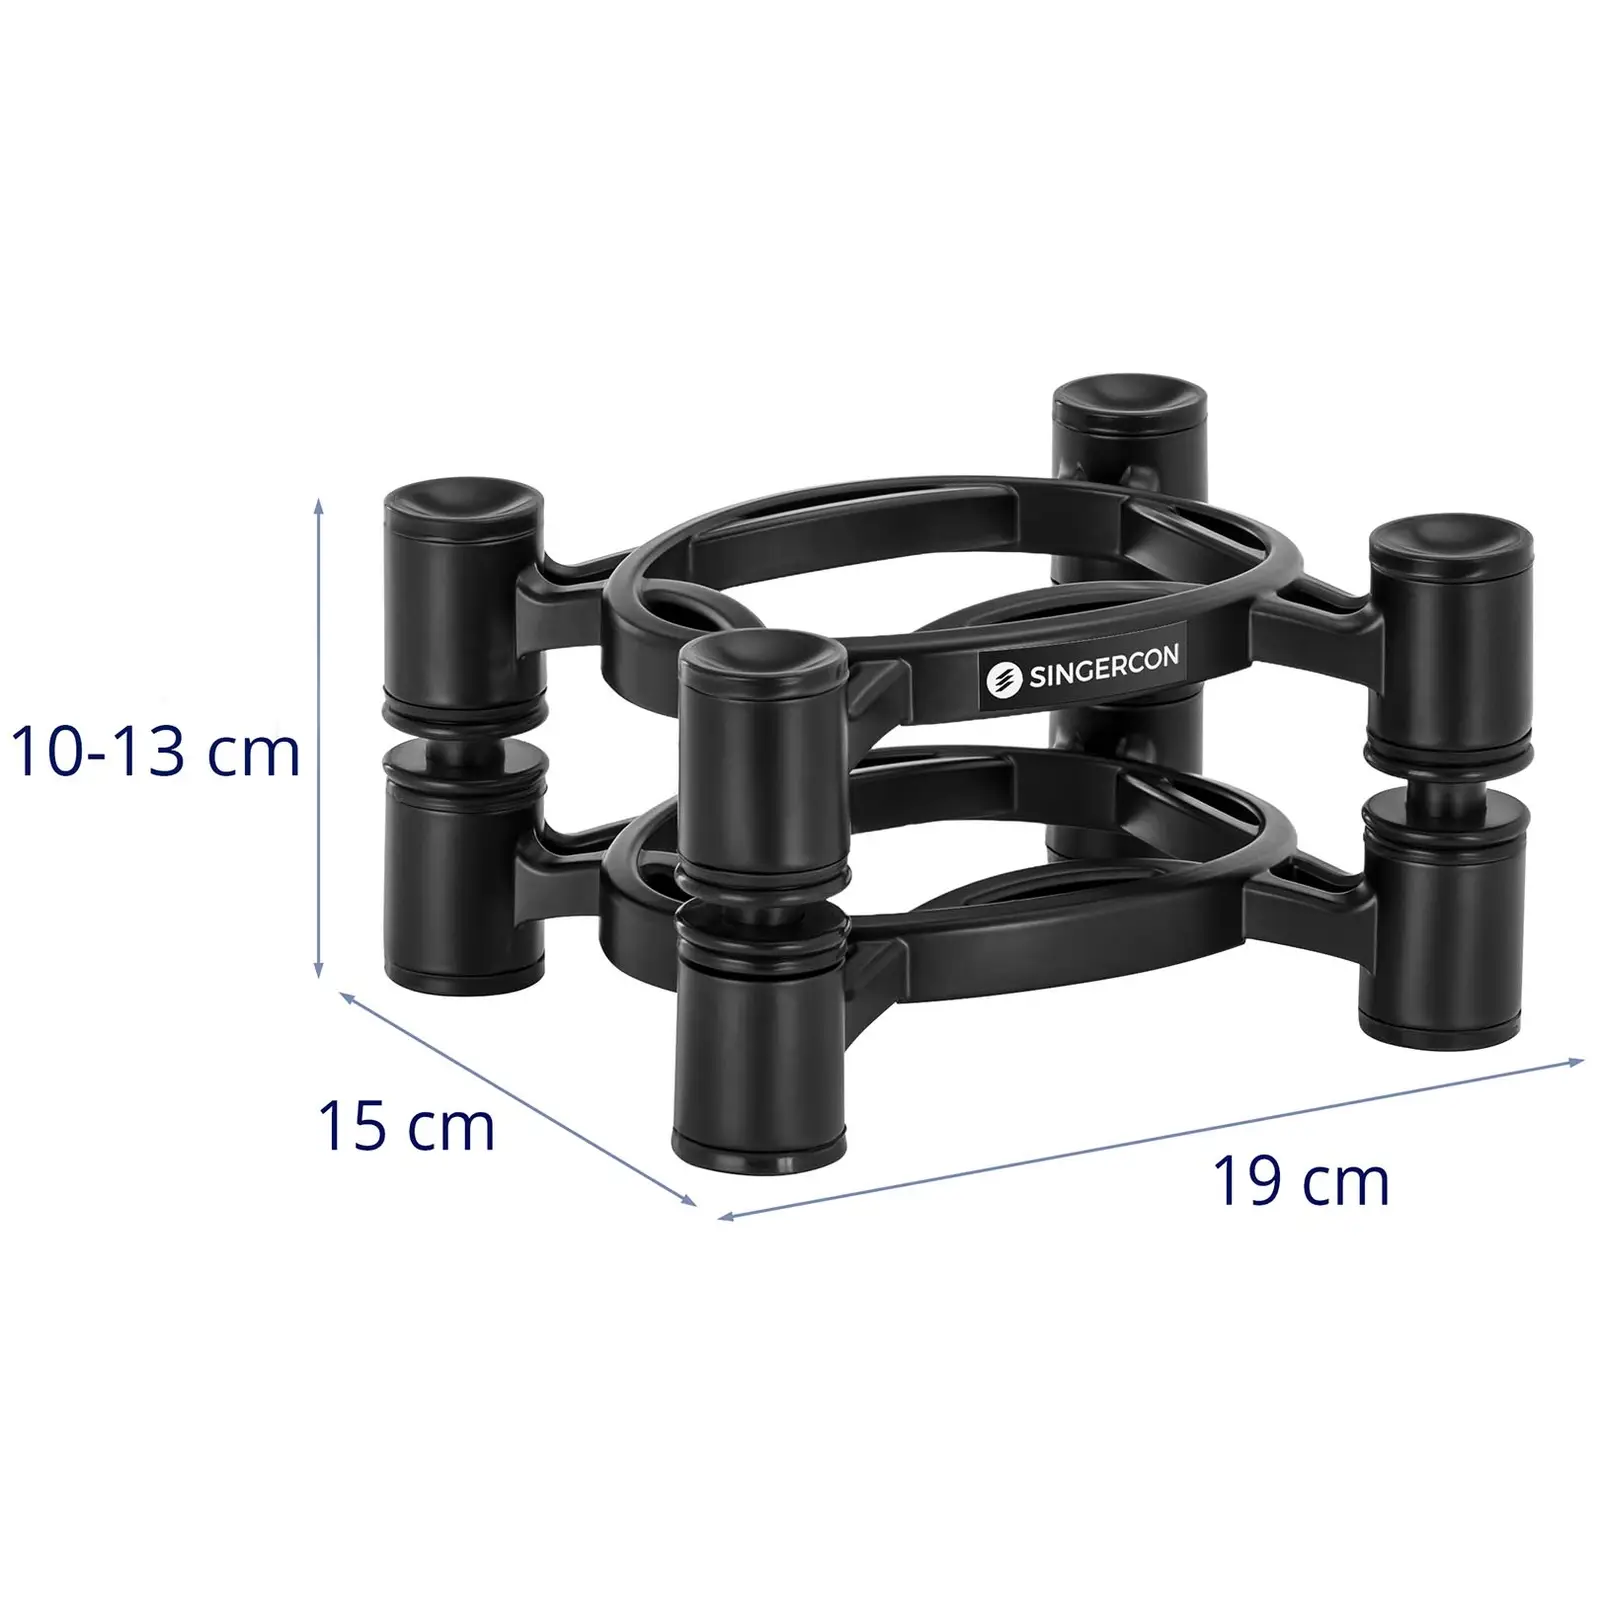 Speaker Stand - up to 10 kg - 100 - 130 mm height adjustable - < 10° tiltable